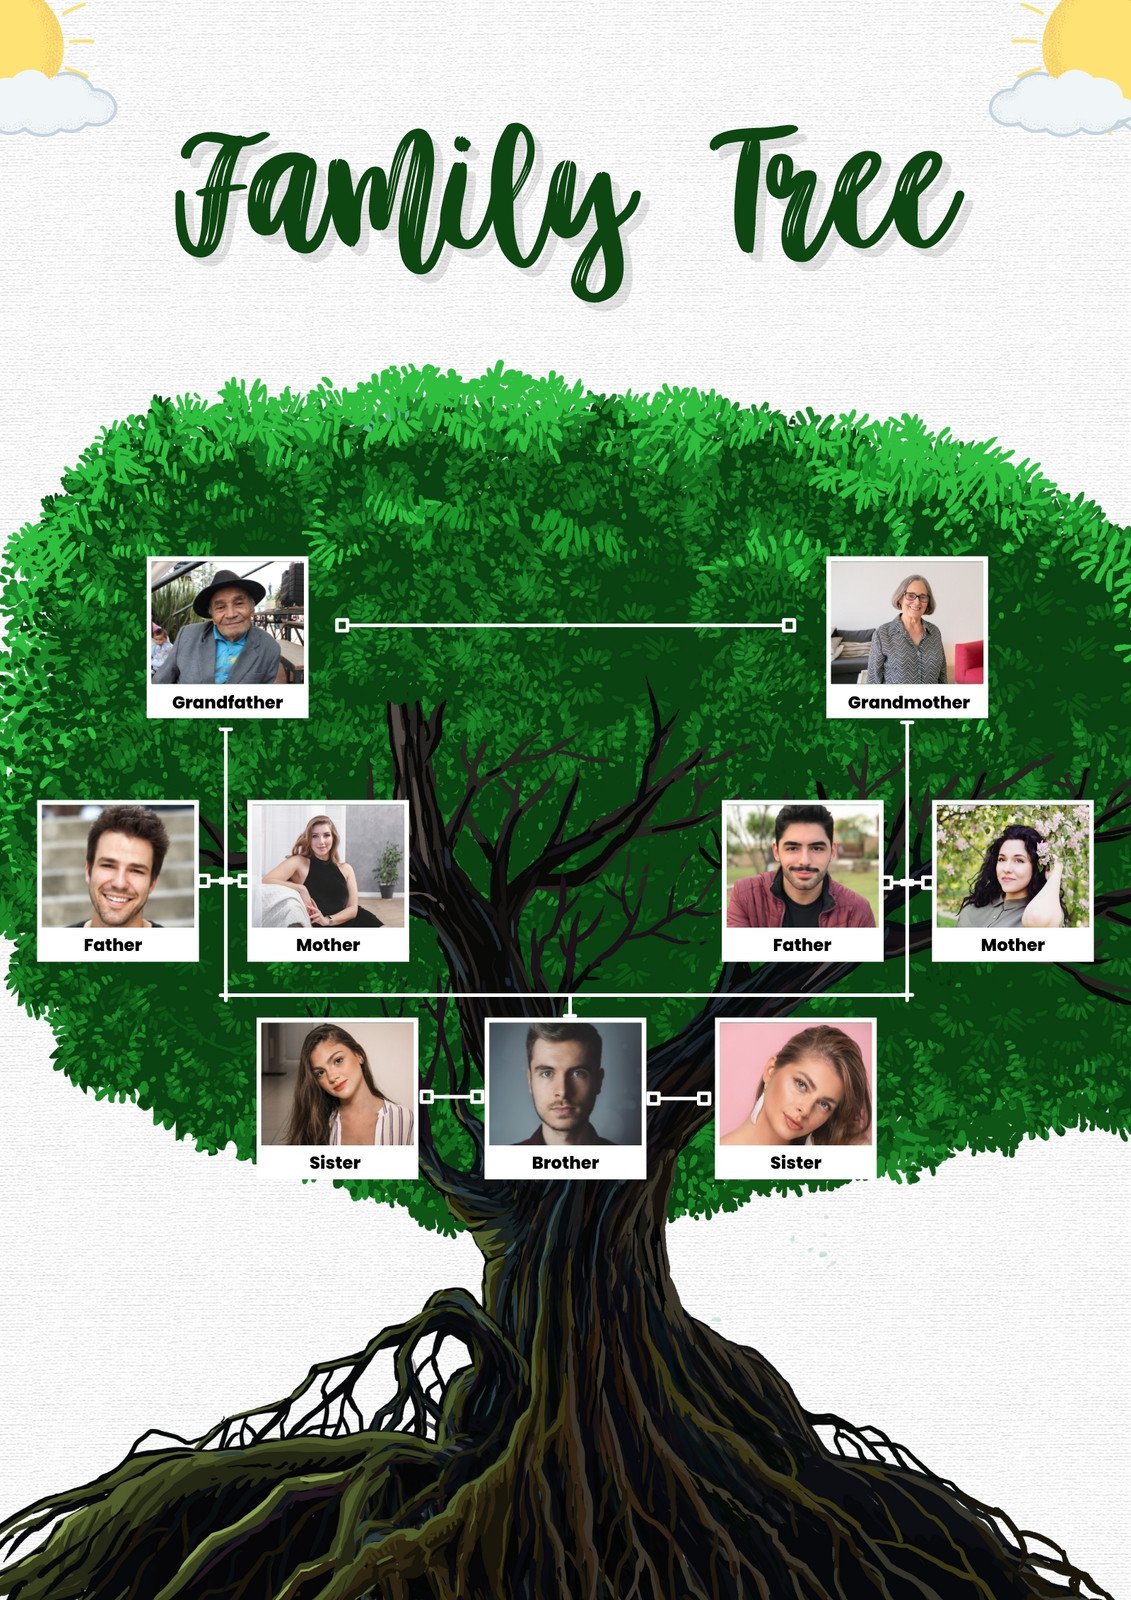 15 Cool Family Tree Wall Art Ideas - Custom Decor to Show Family Tree